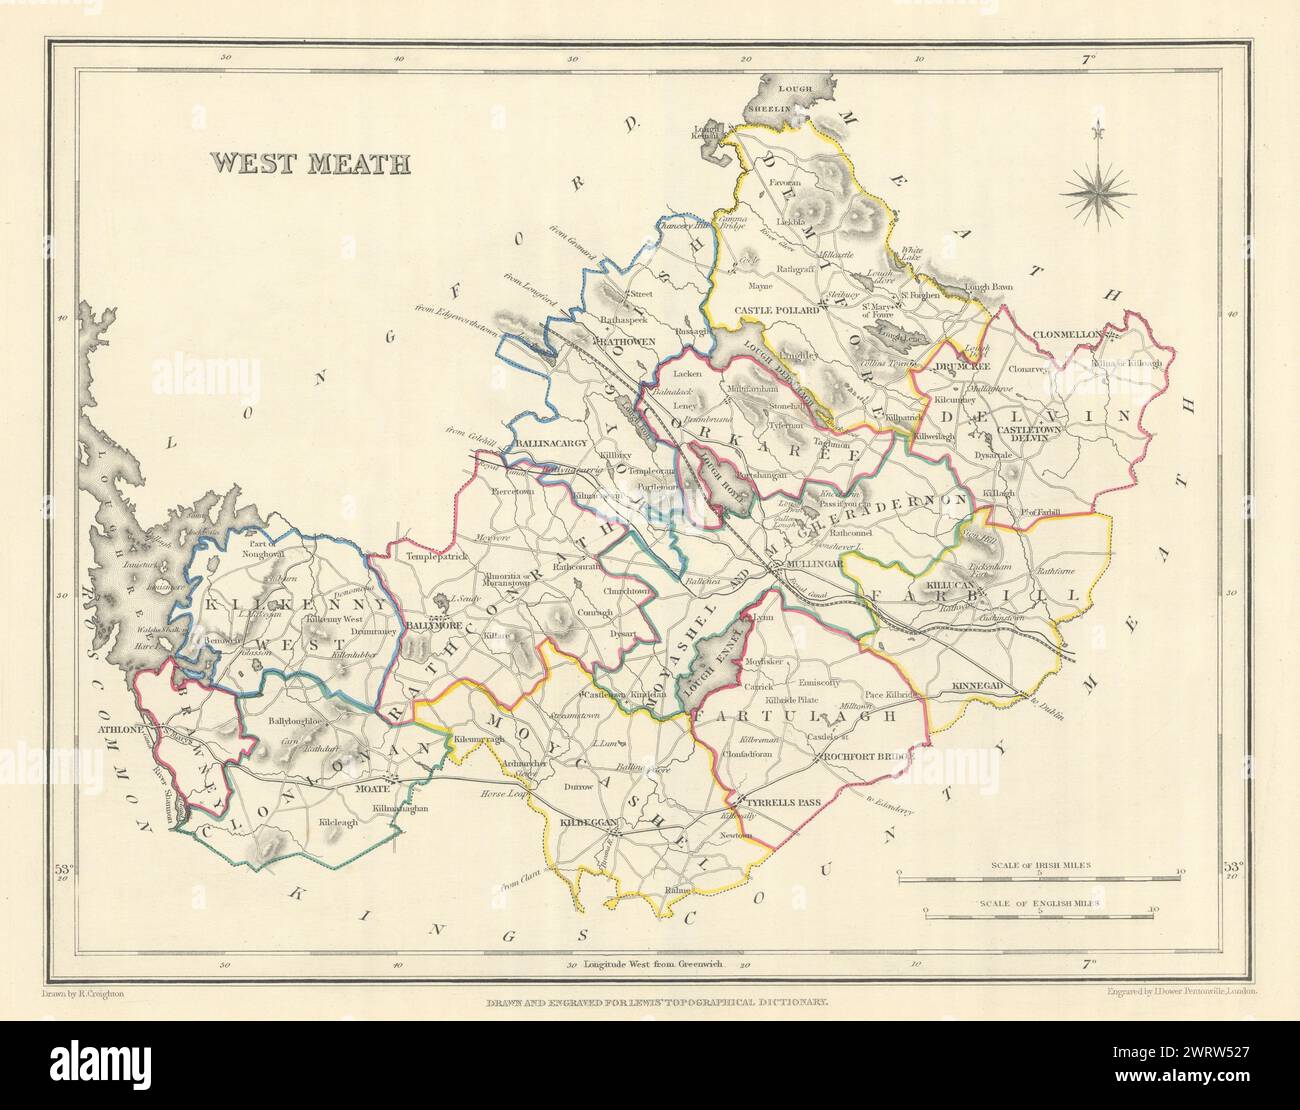 Mappa antica DELLA CONTEA DI WESTMEATH per LEWIS di CREIGHTON & DOWER. Irlanda 1850 Foto Stock